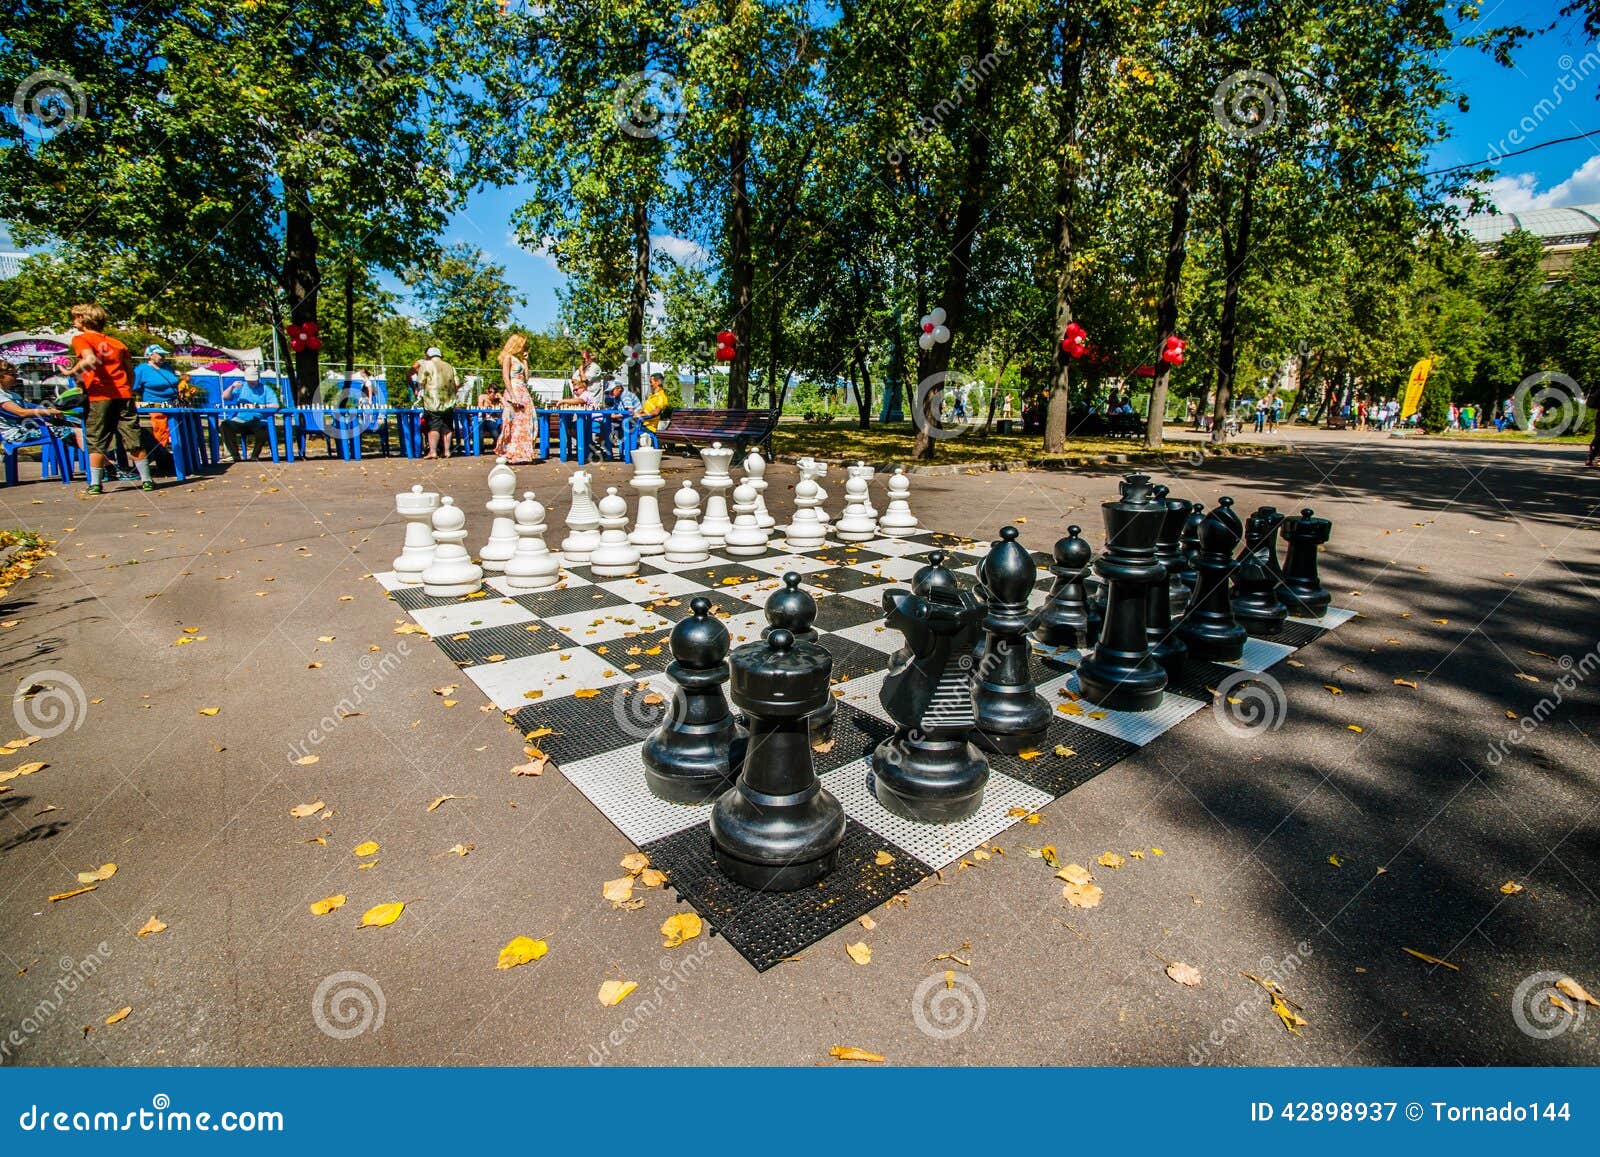 Festival de xadrez de Praga